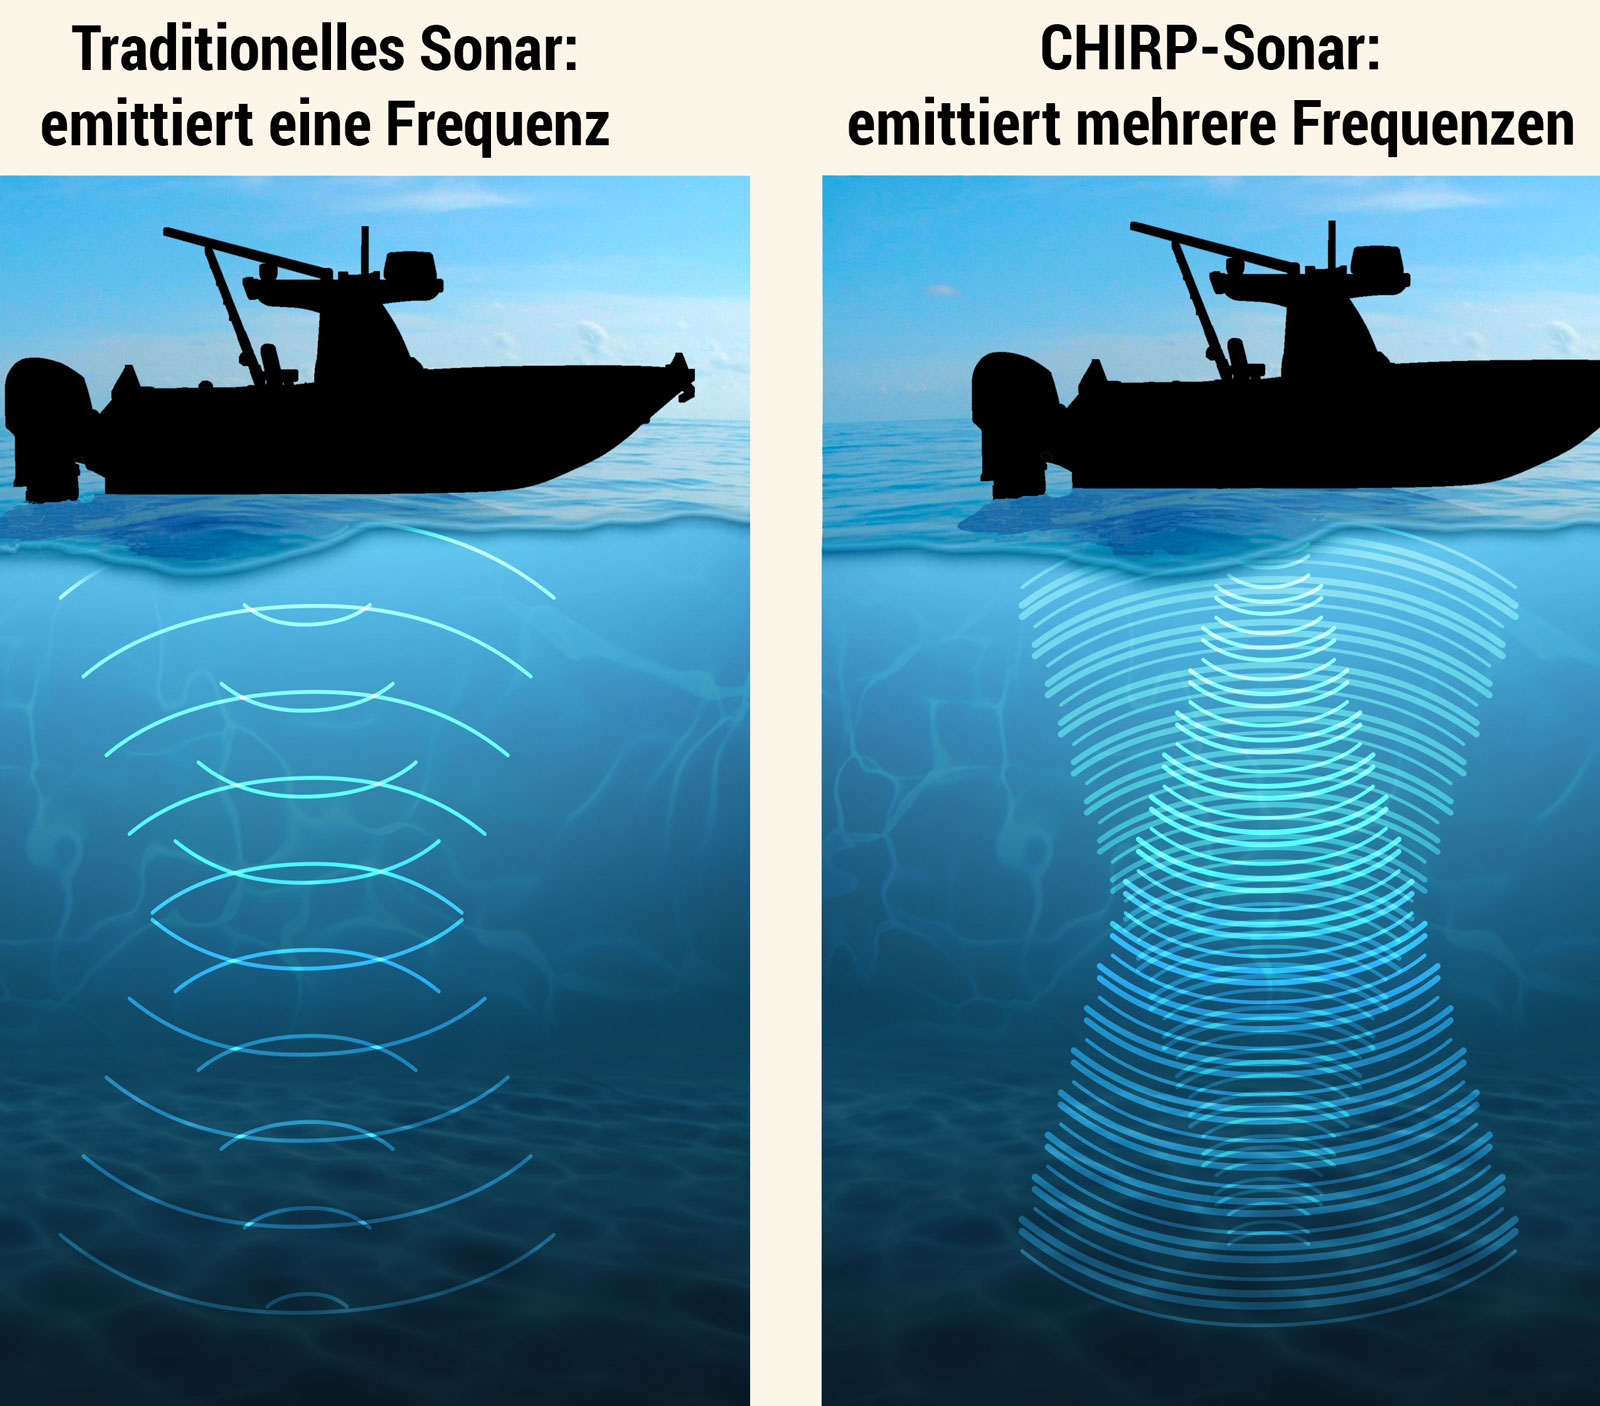 Da das CHIRP-Sonar arbeitet mit mehreren Frequenzen auf unterschiedlicher Höhe. Das traditionelle Sonar sendet dagegen nur eine einzige Frequenz aus.